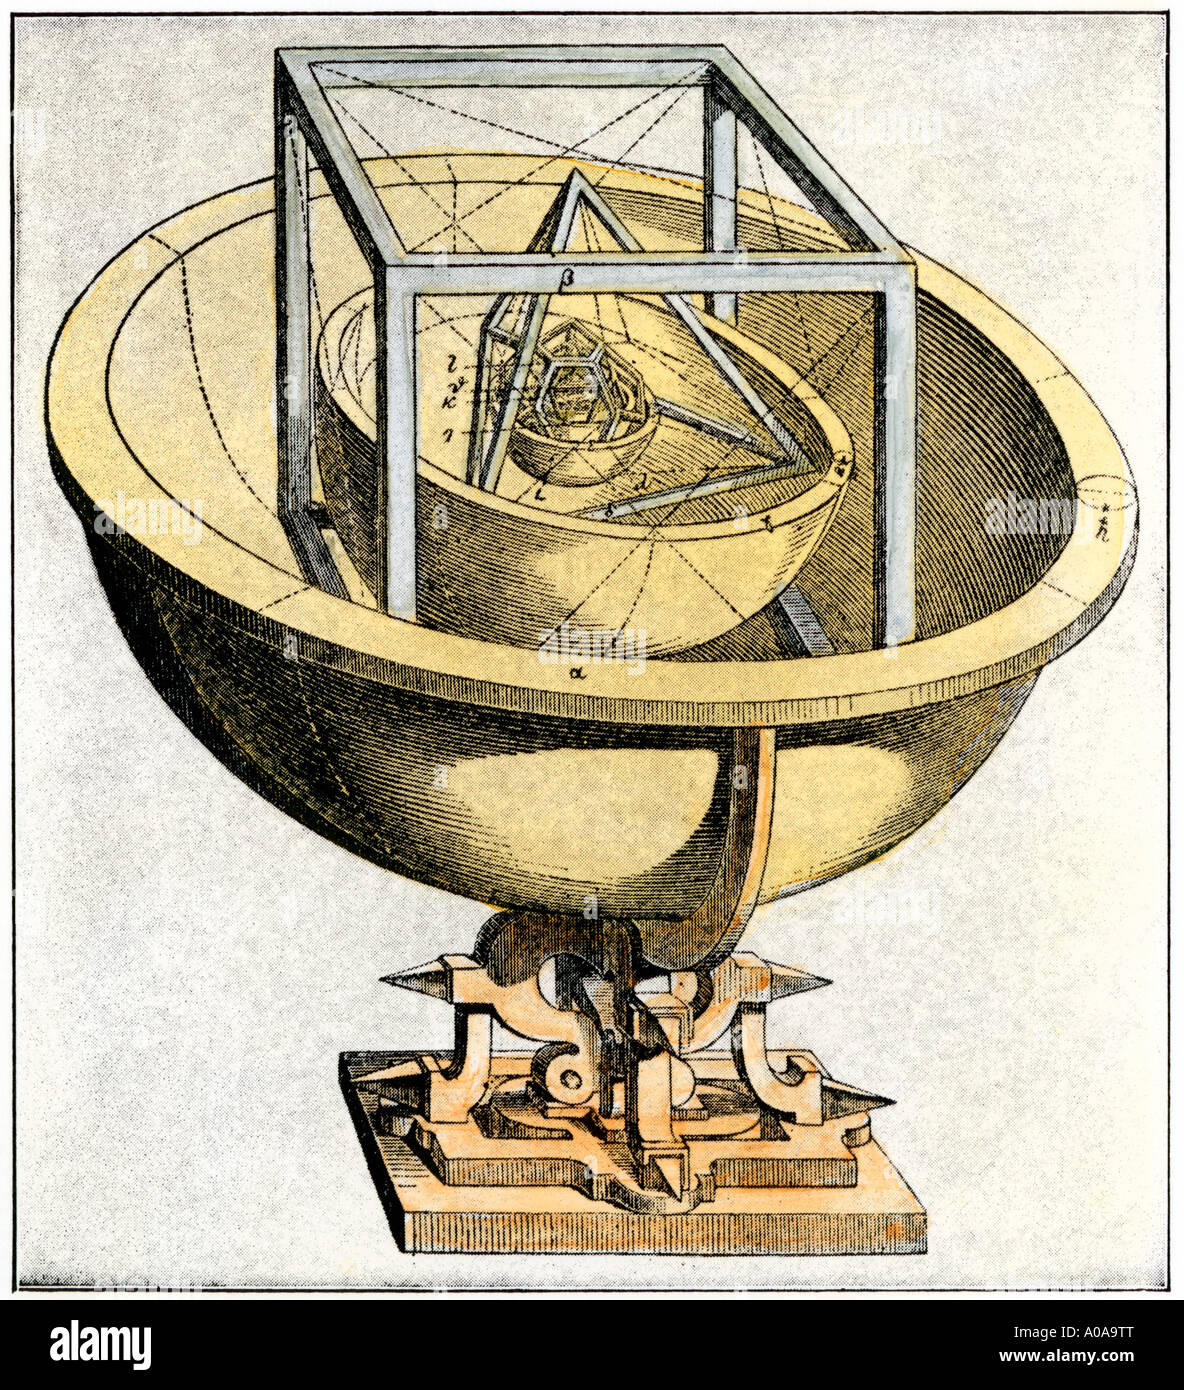 Le mécanisme montrant le début de la théorie des orbites planétaires de Johann Kepler. À la main, gravure sur bois Banque D'Images